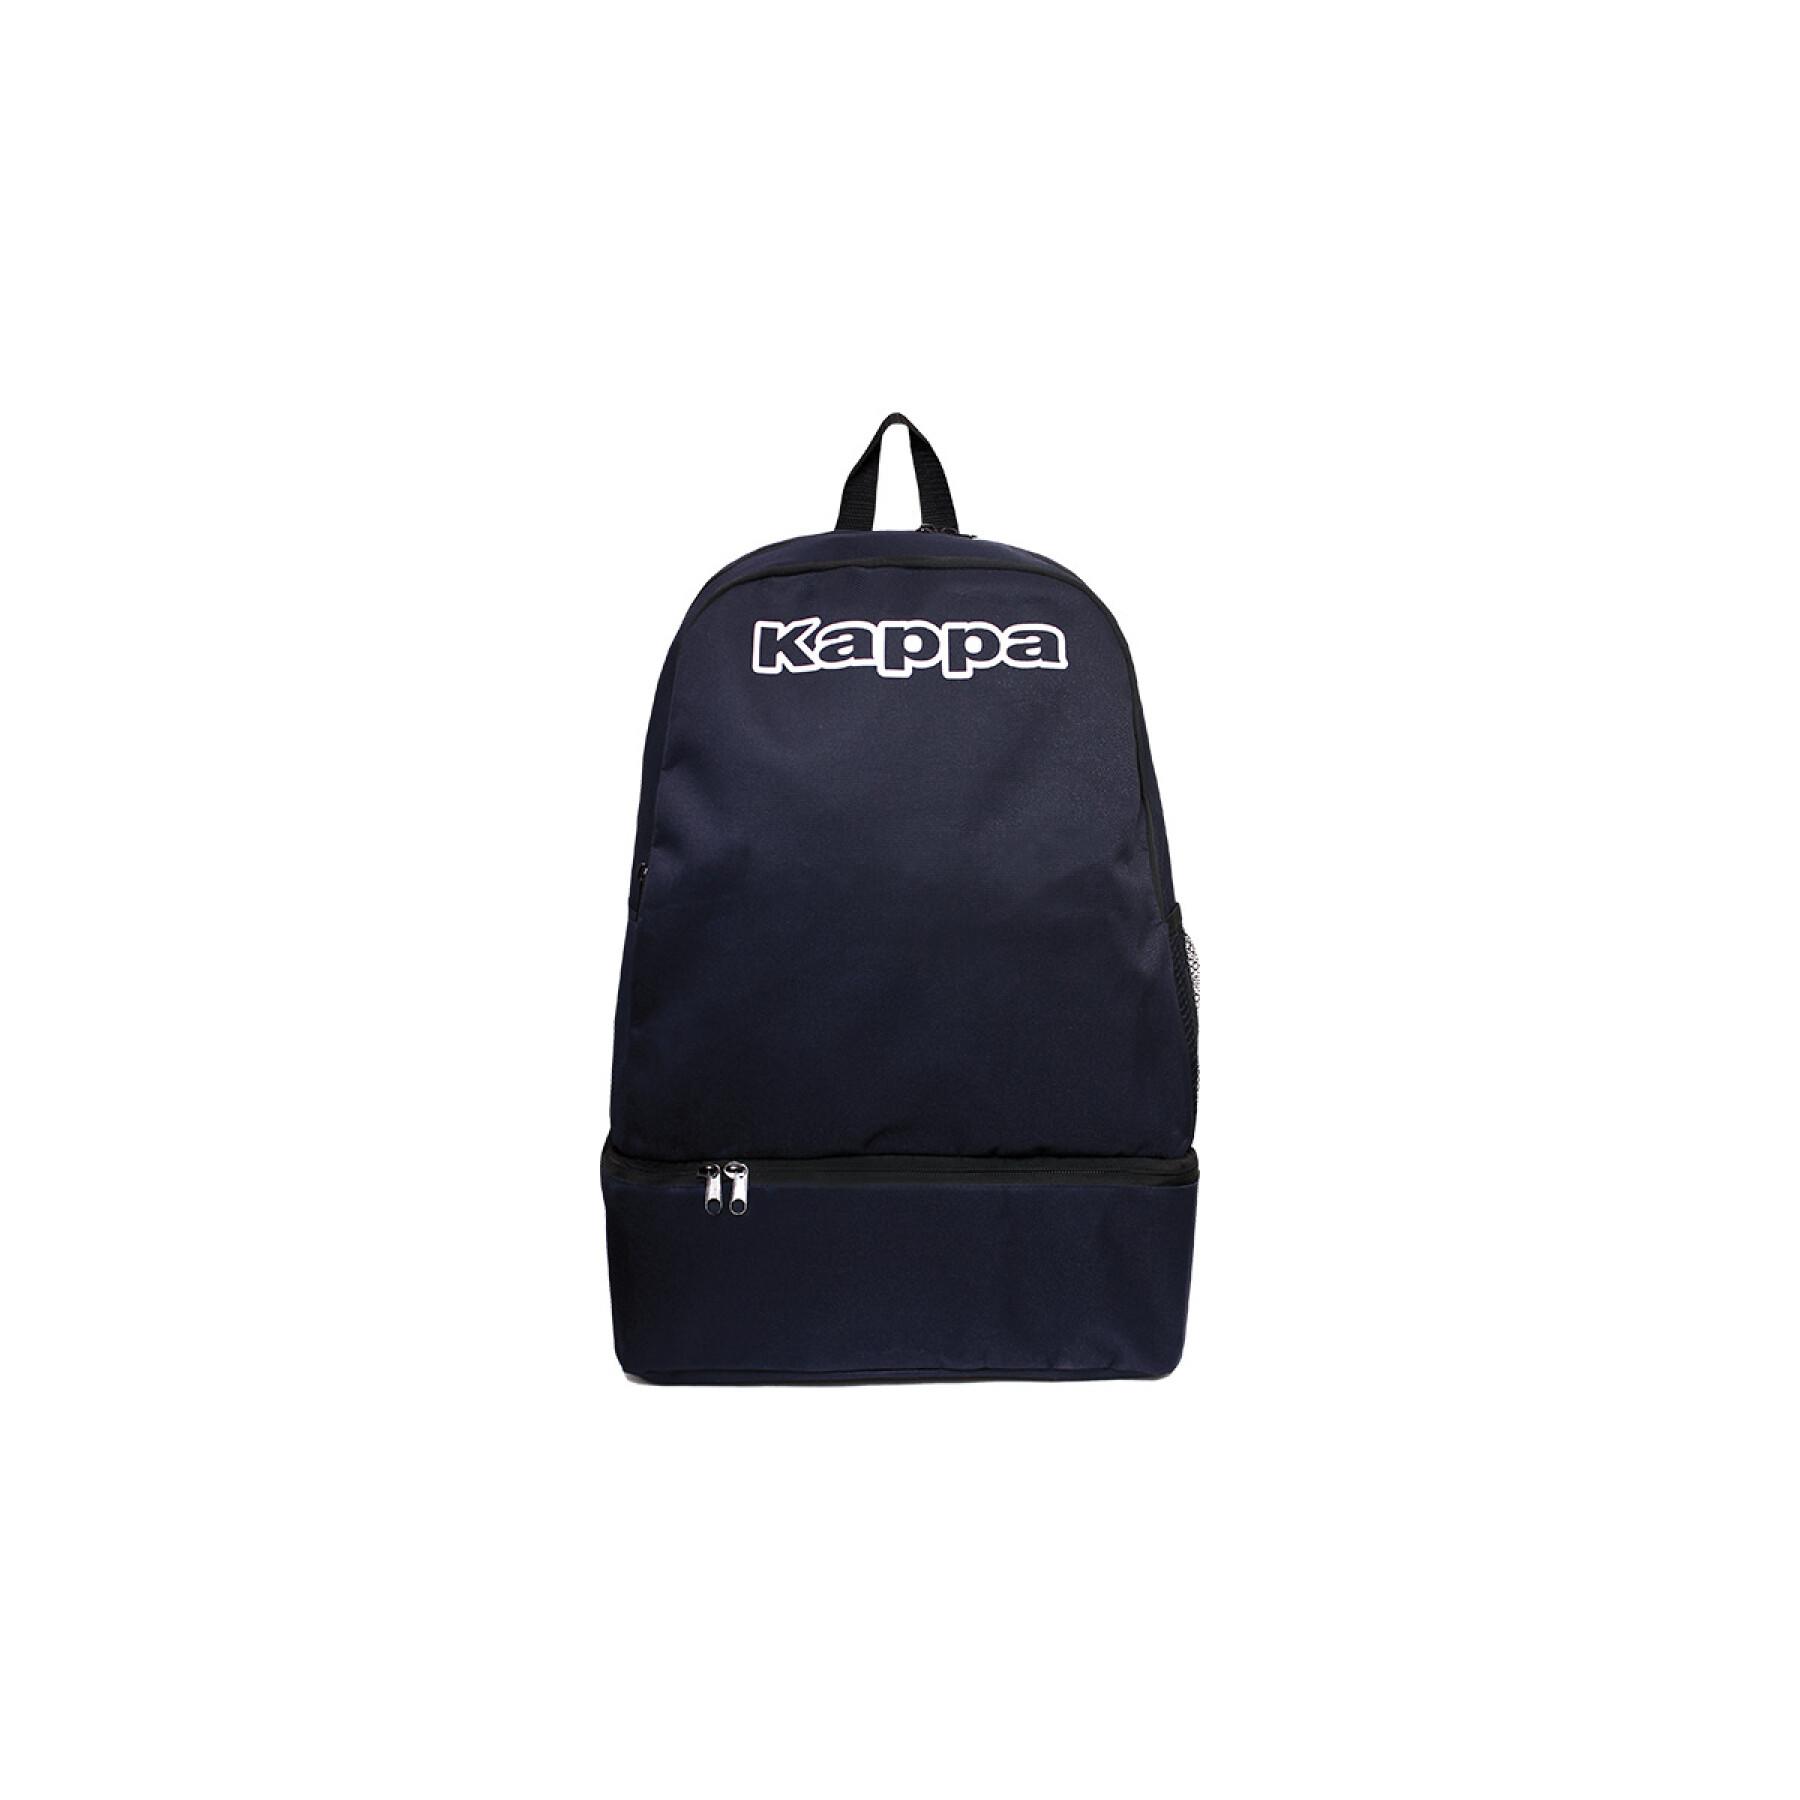 Rugzak Kappa backpack